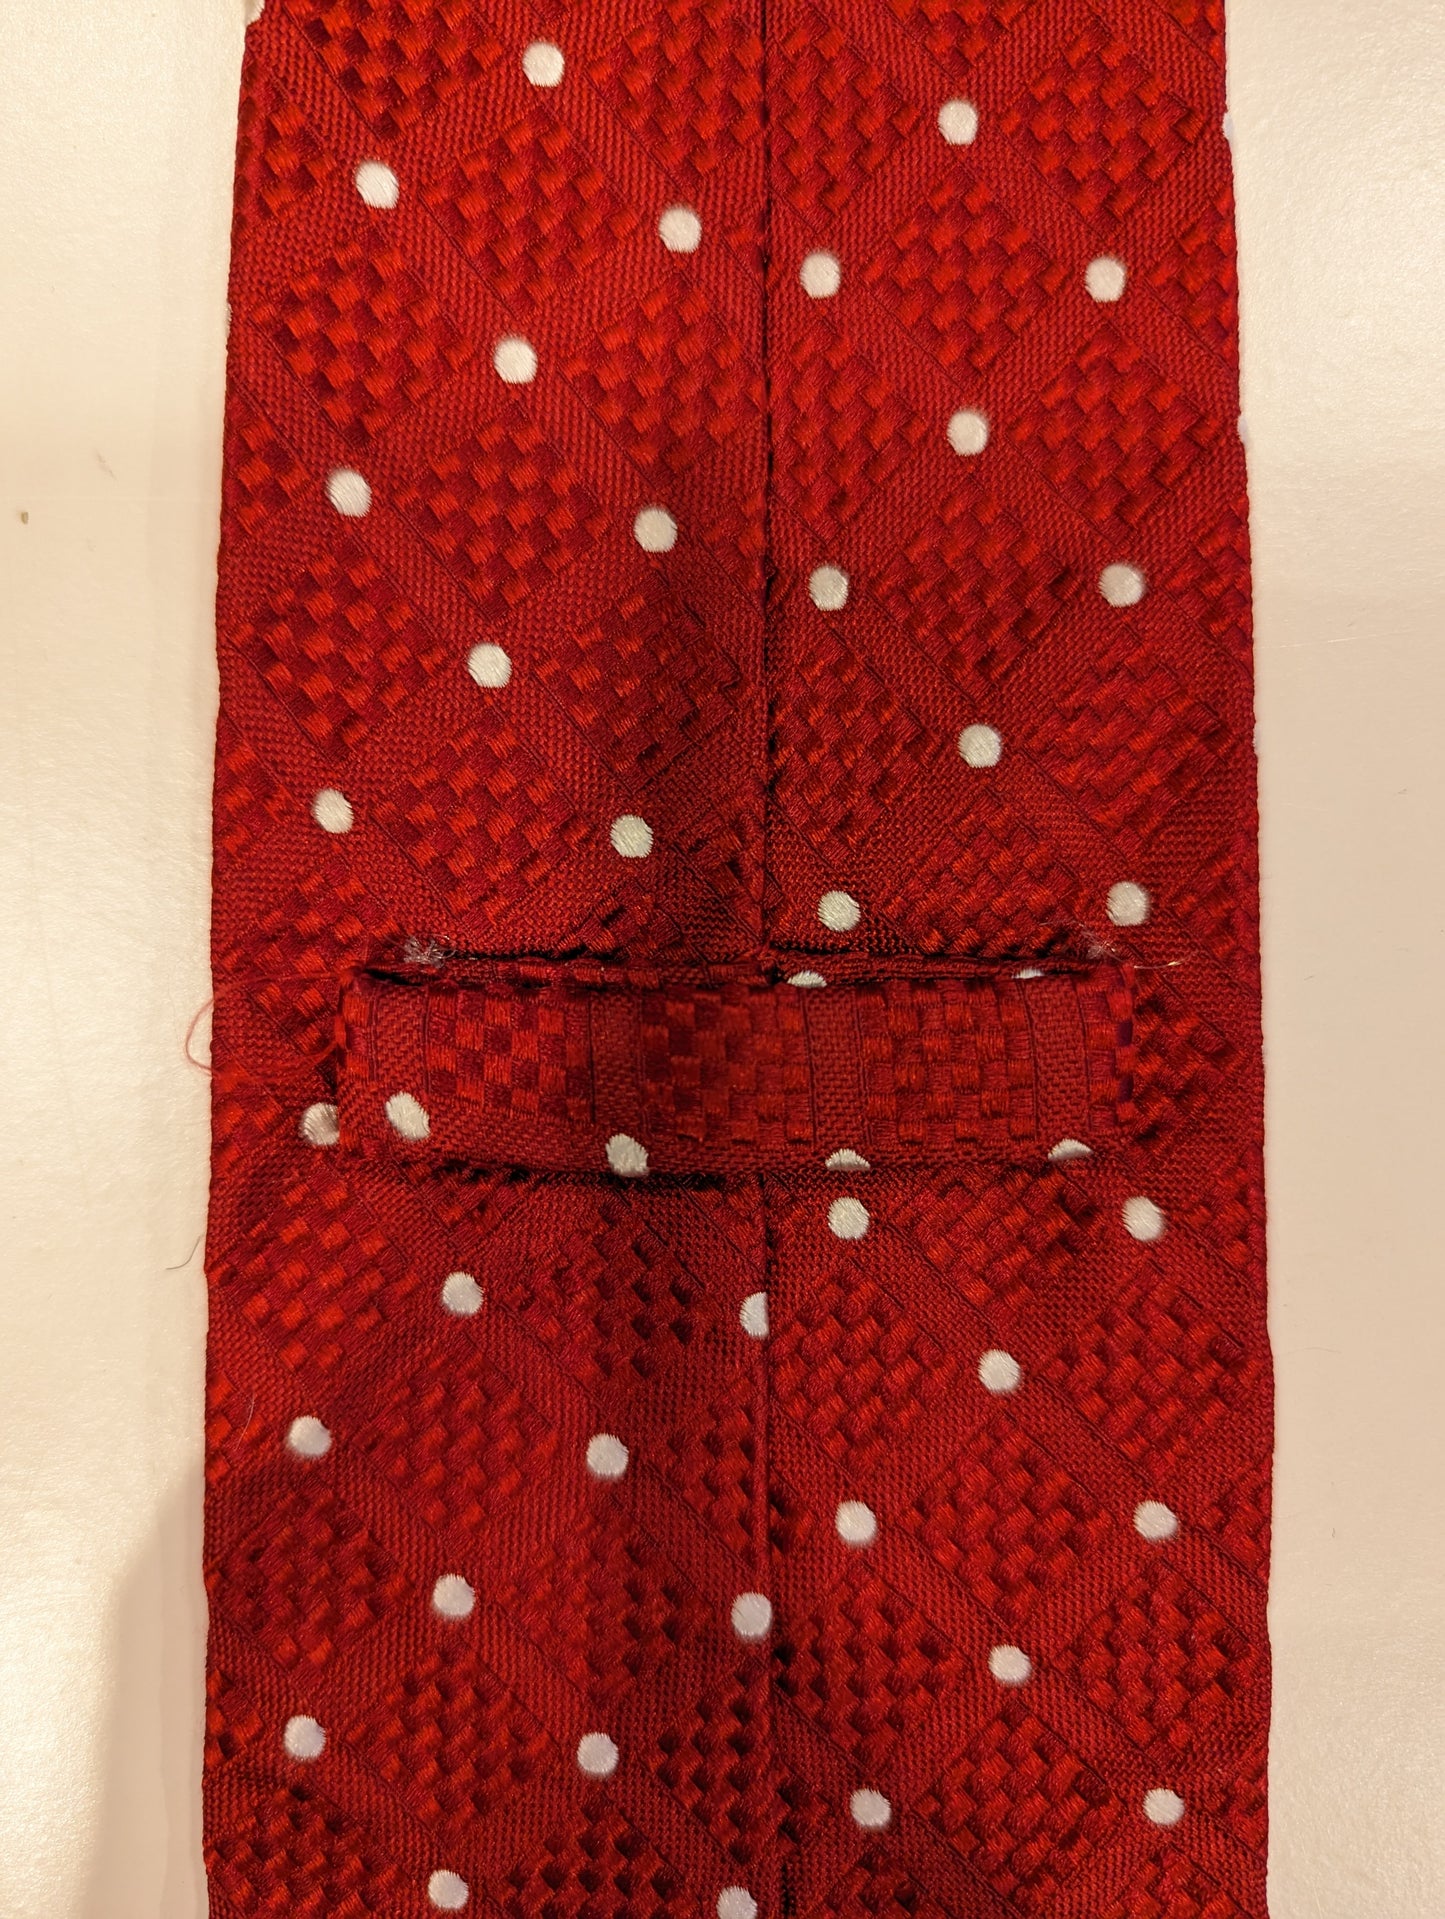 Cravatta di seta vintage faconnabile. Motivo bianco rosso.